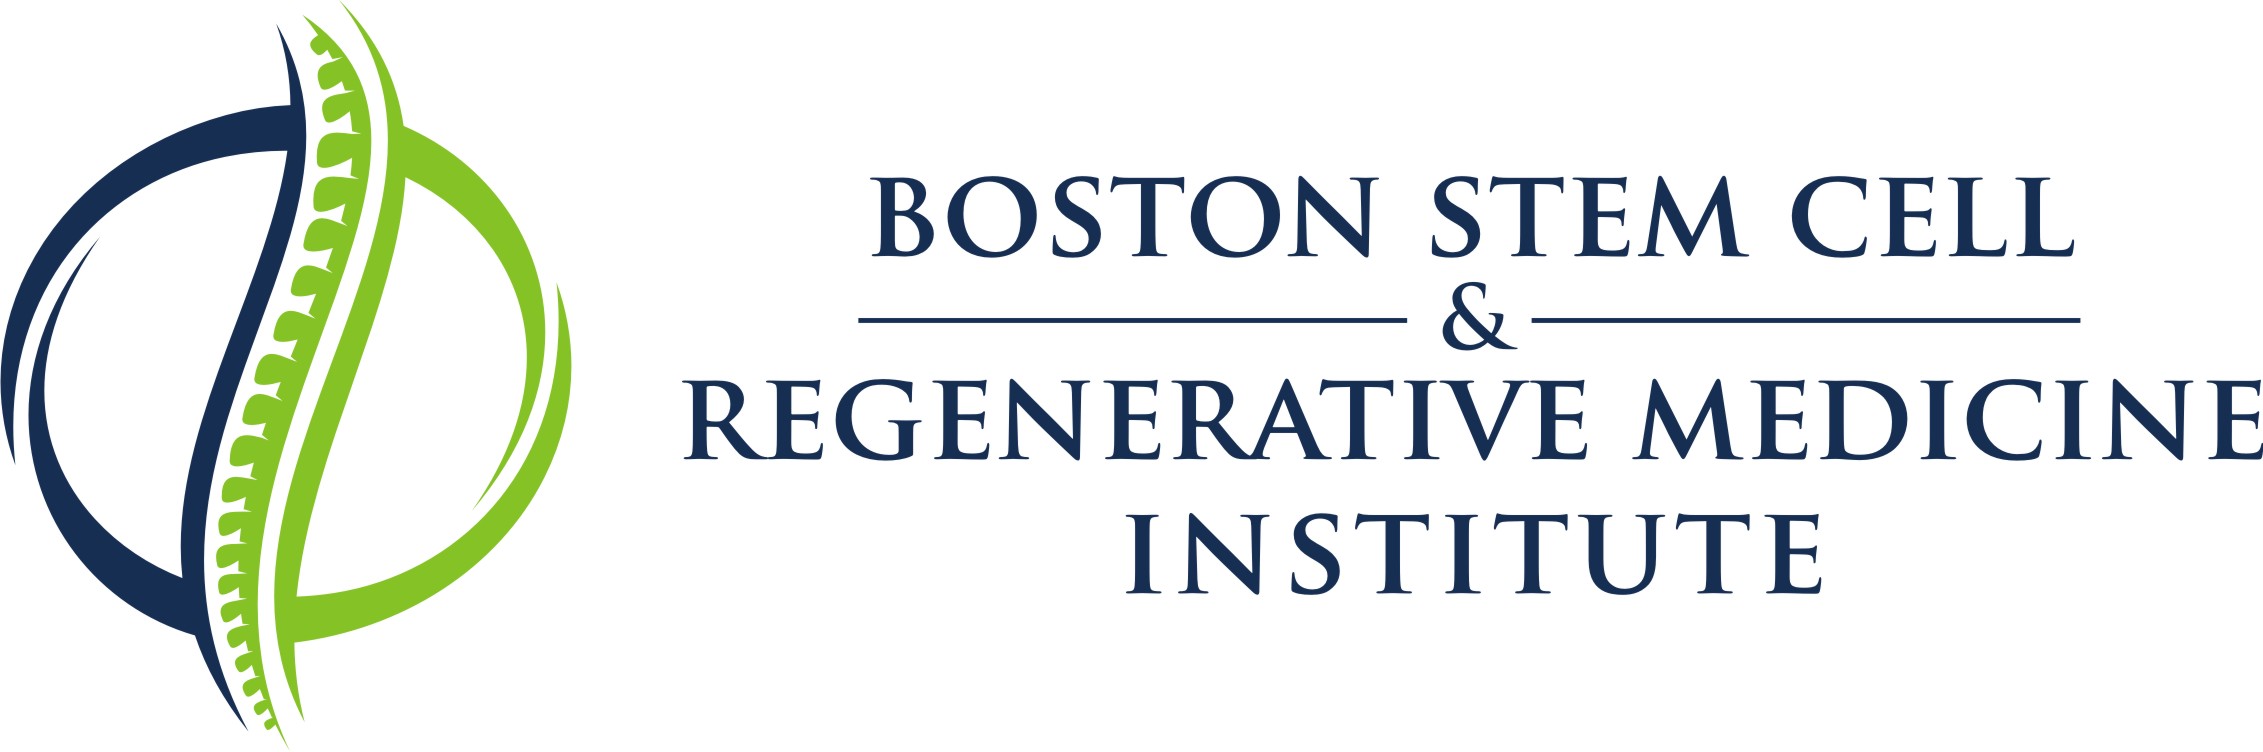 Boston Stem Cell and Regenerative Medicine Institute